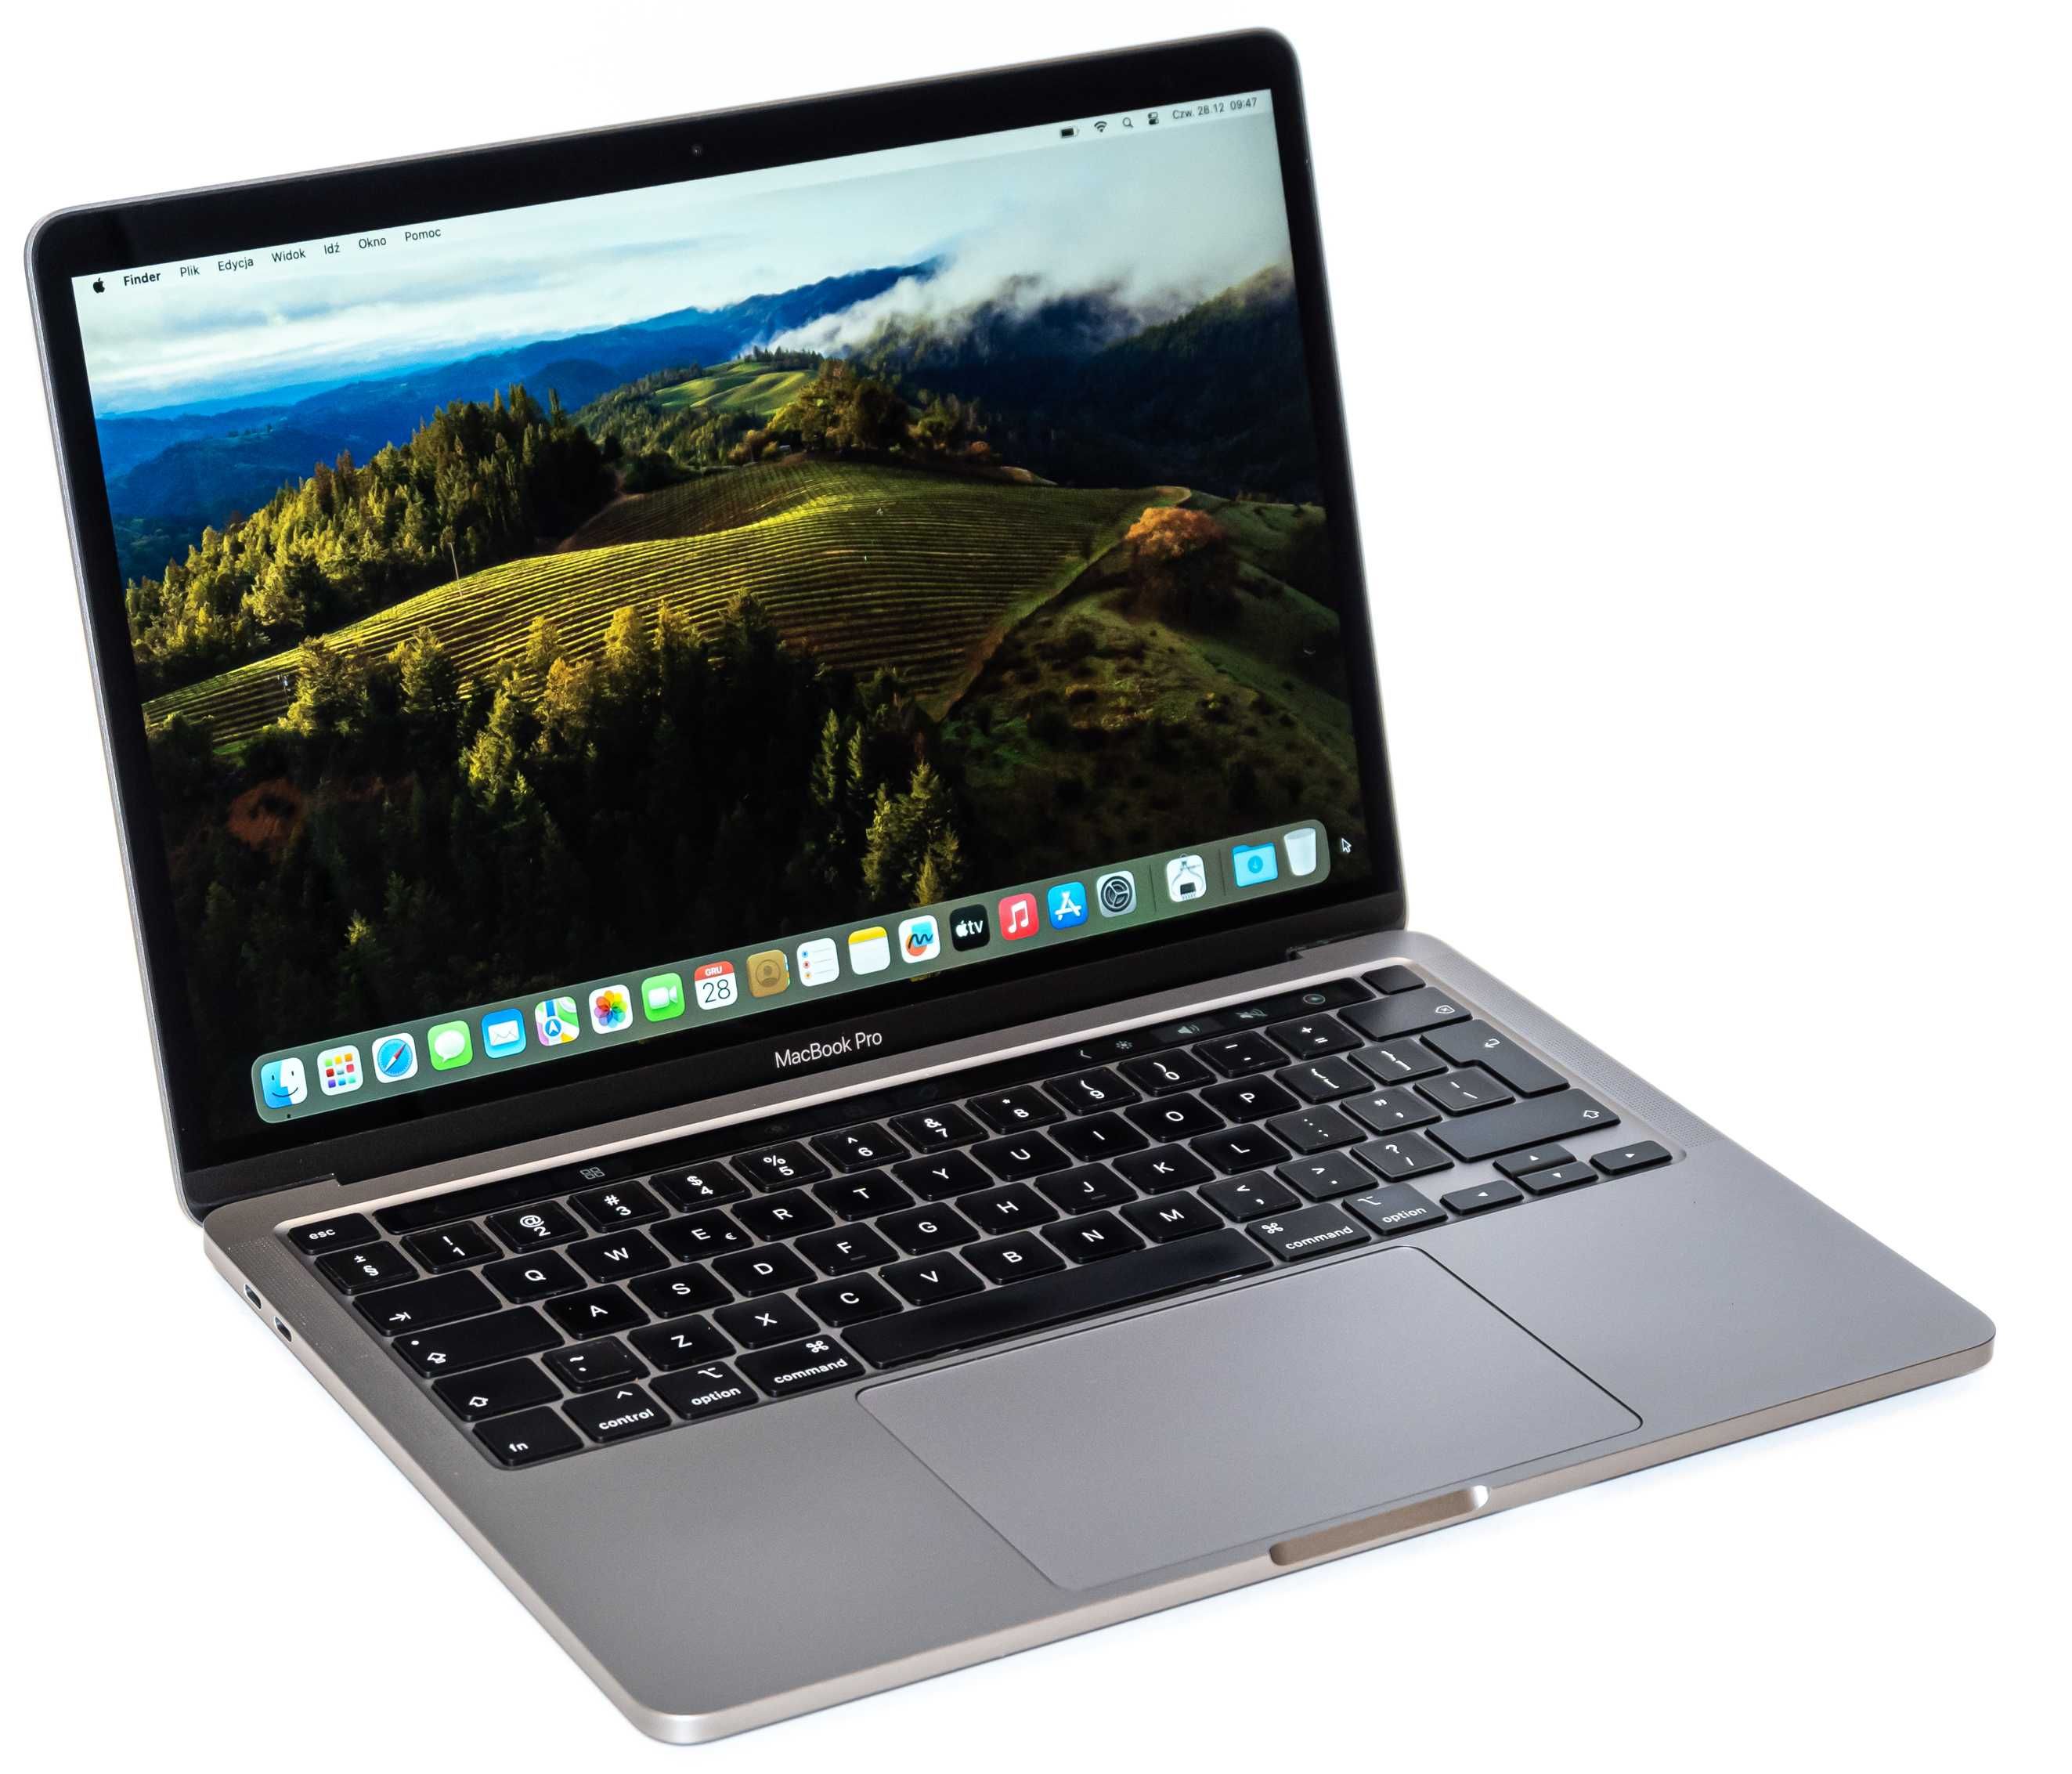 MacBook Pro 13 2020 i5 1.4GHz 8GB 256GB SSD Iris Plus 645